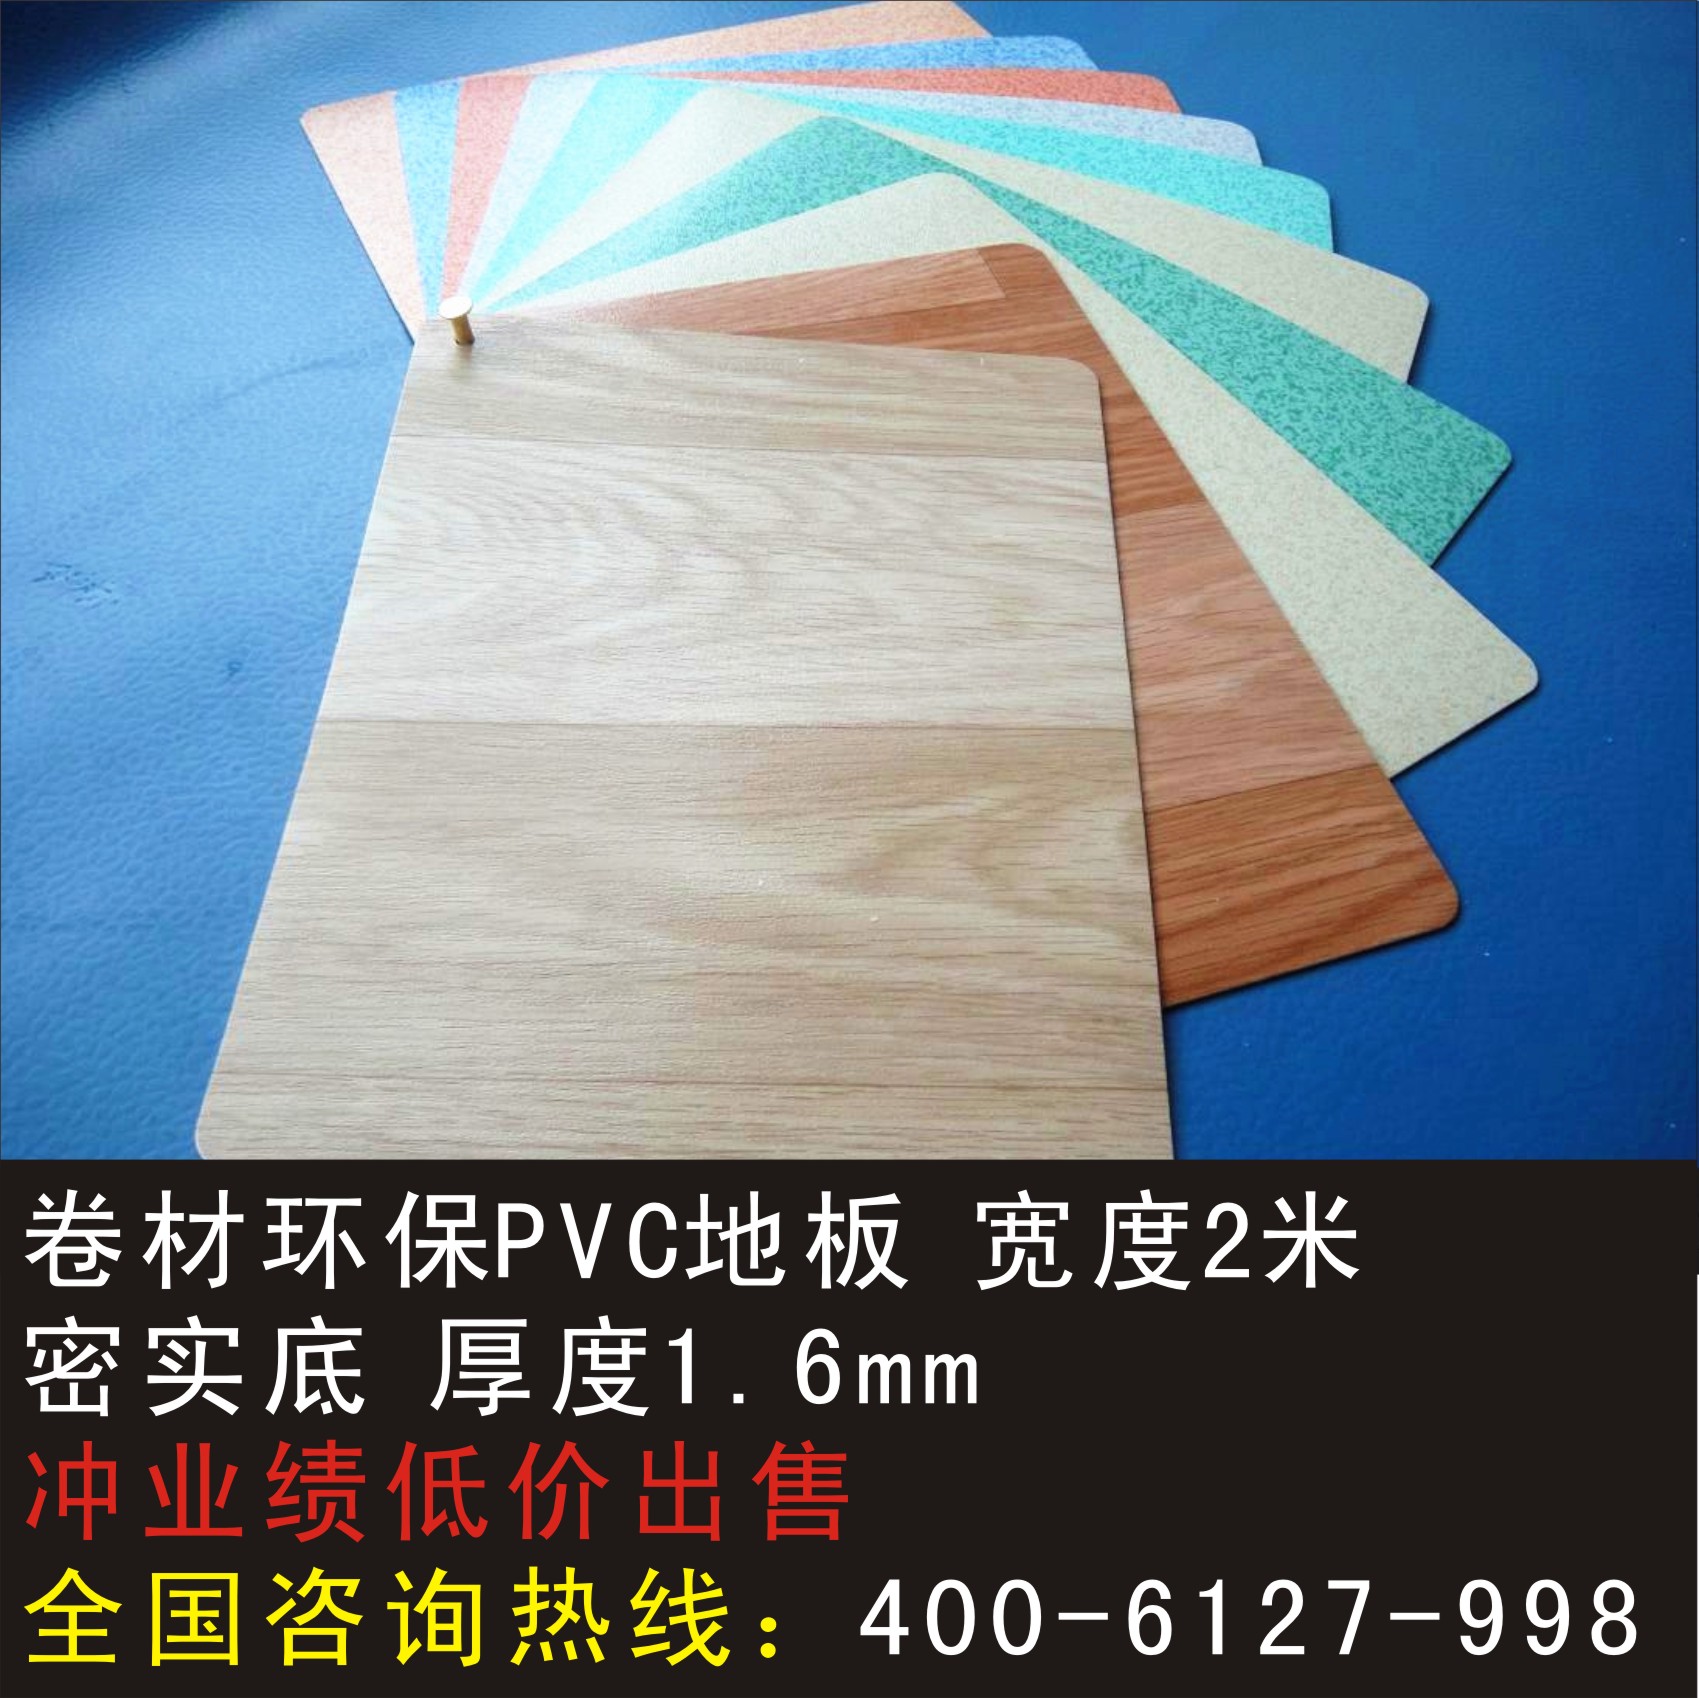 超耐磨卷材胶地板 木纹加厚环保 防水防滑塑胶地板 1.6mm商用地板